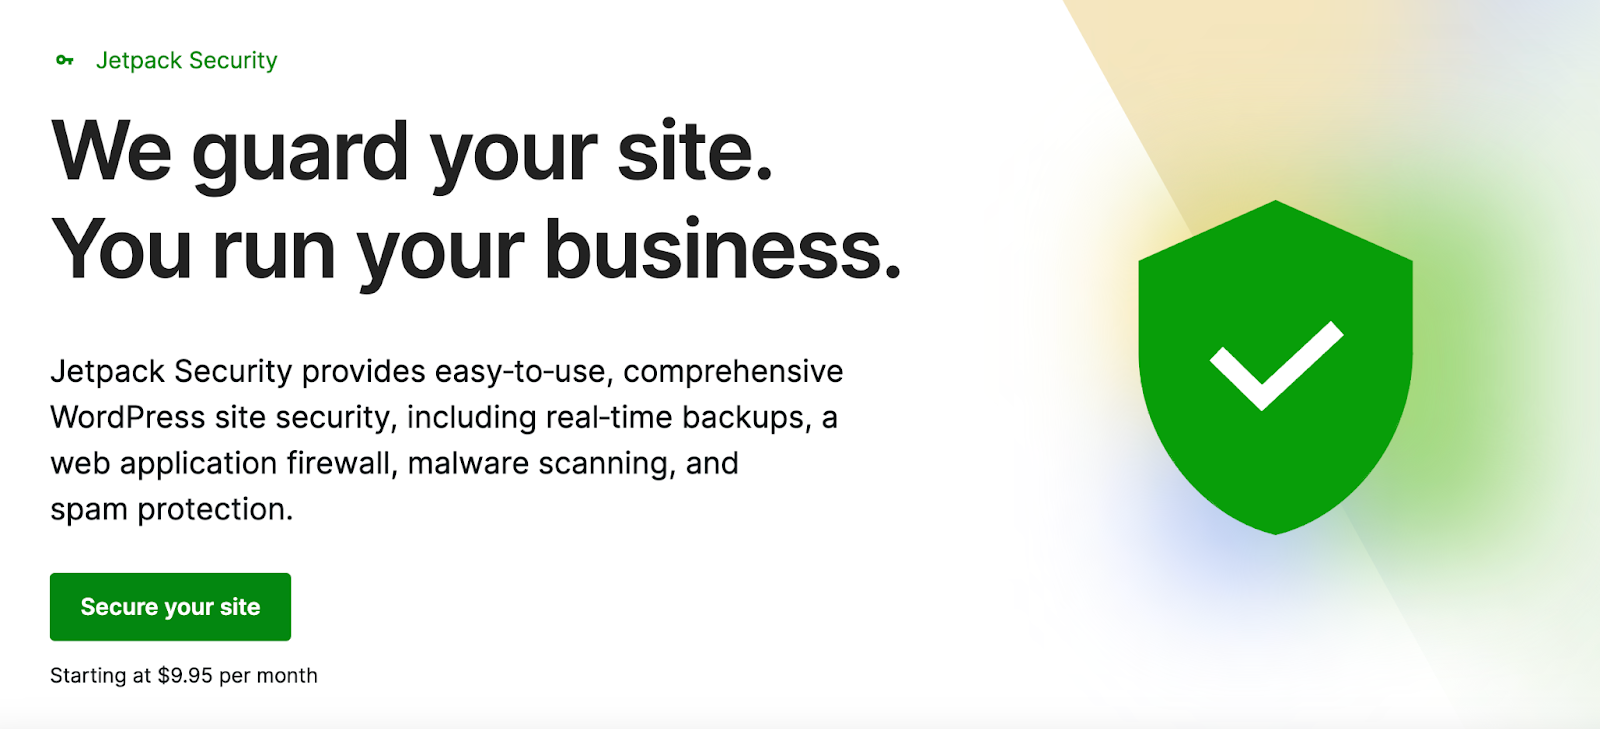 Jetpack Security oferă o protecție completă pentru site-ul dvs. WordPress, care cuprinde backup-uri în timp real, scanare malware, protecție împotriva spamului și multe altele.